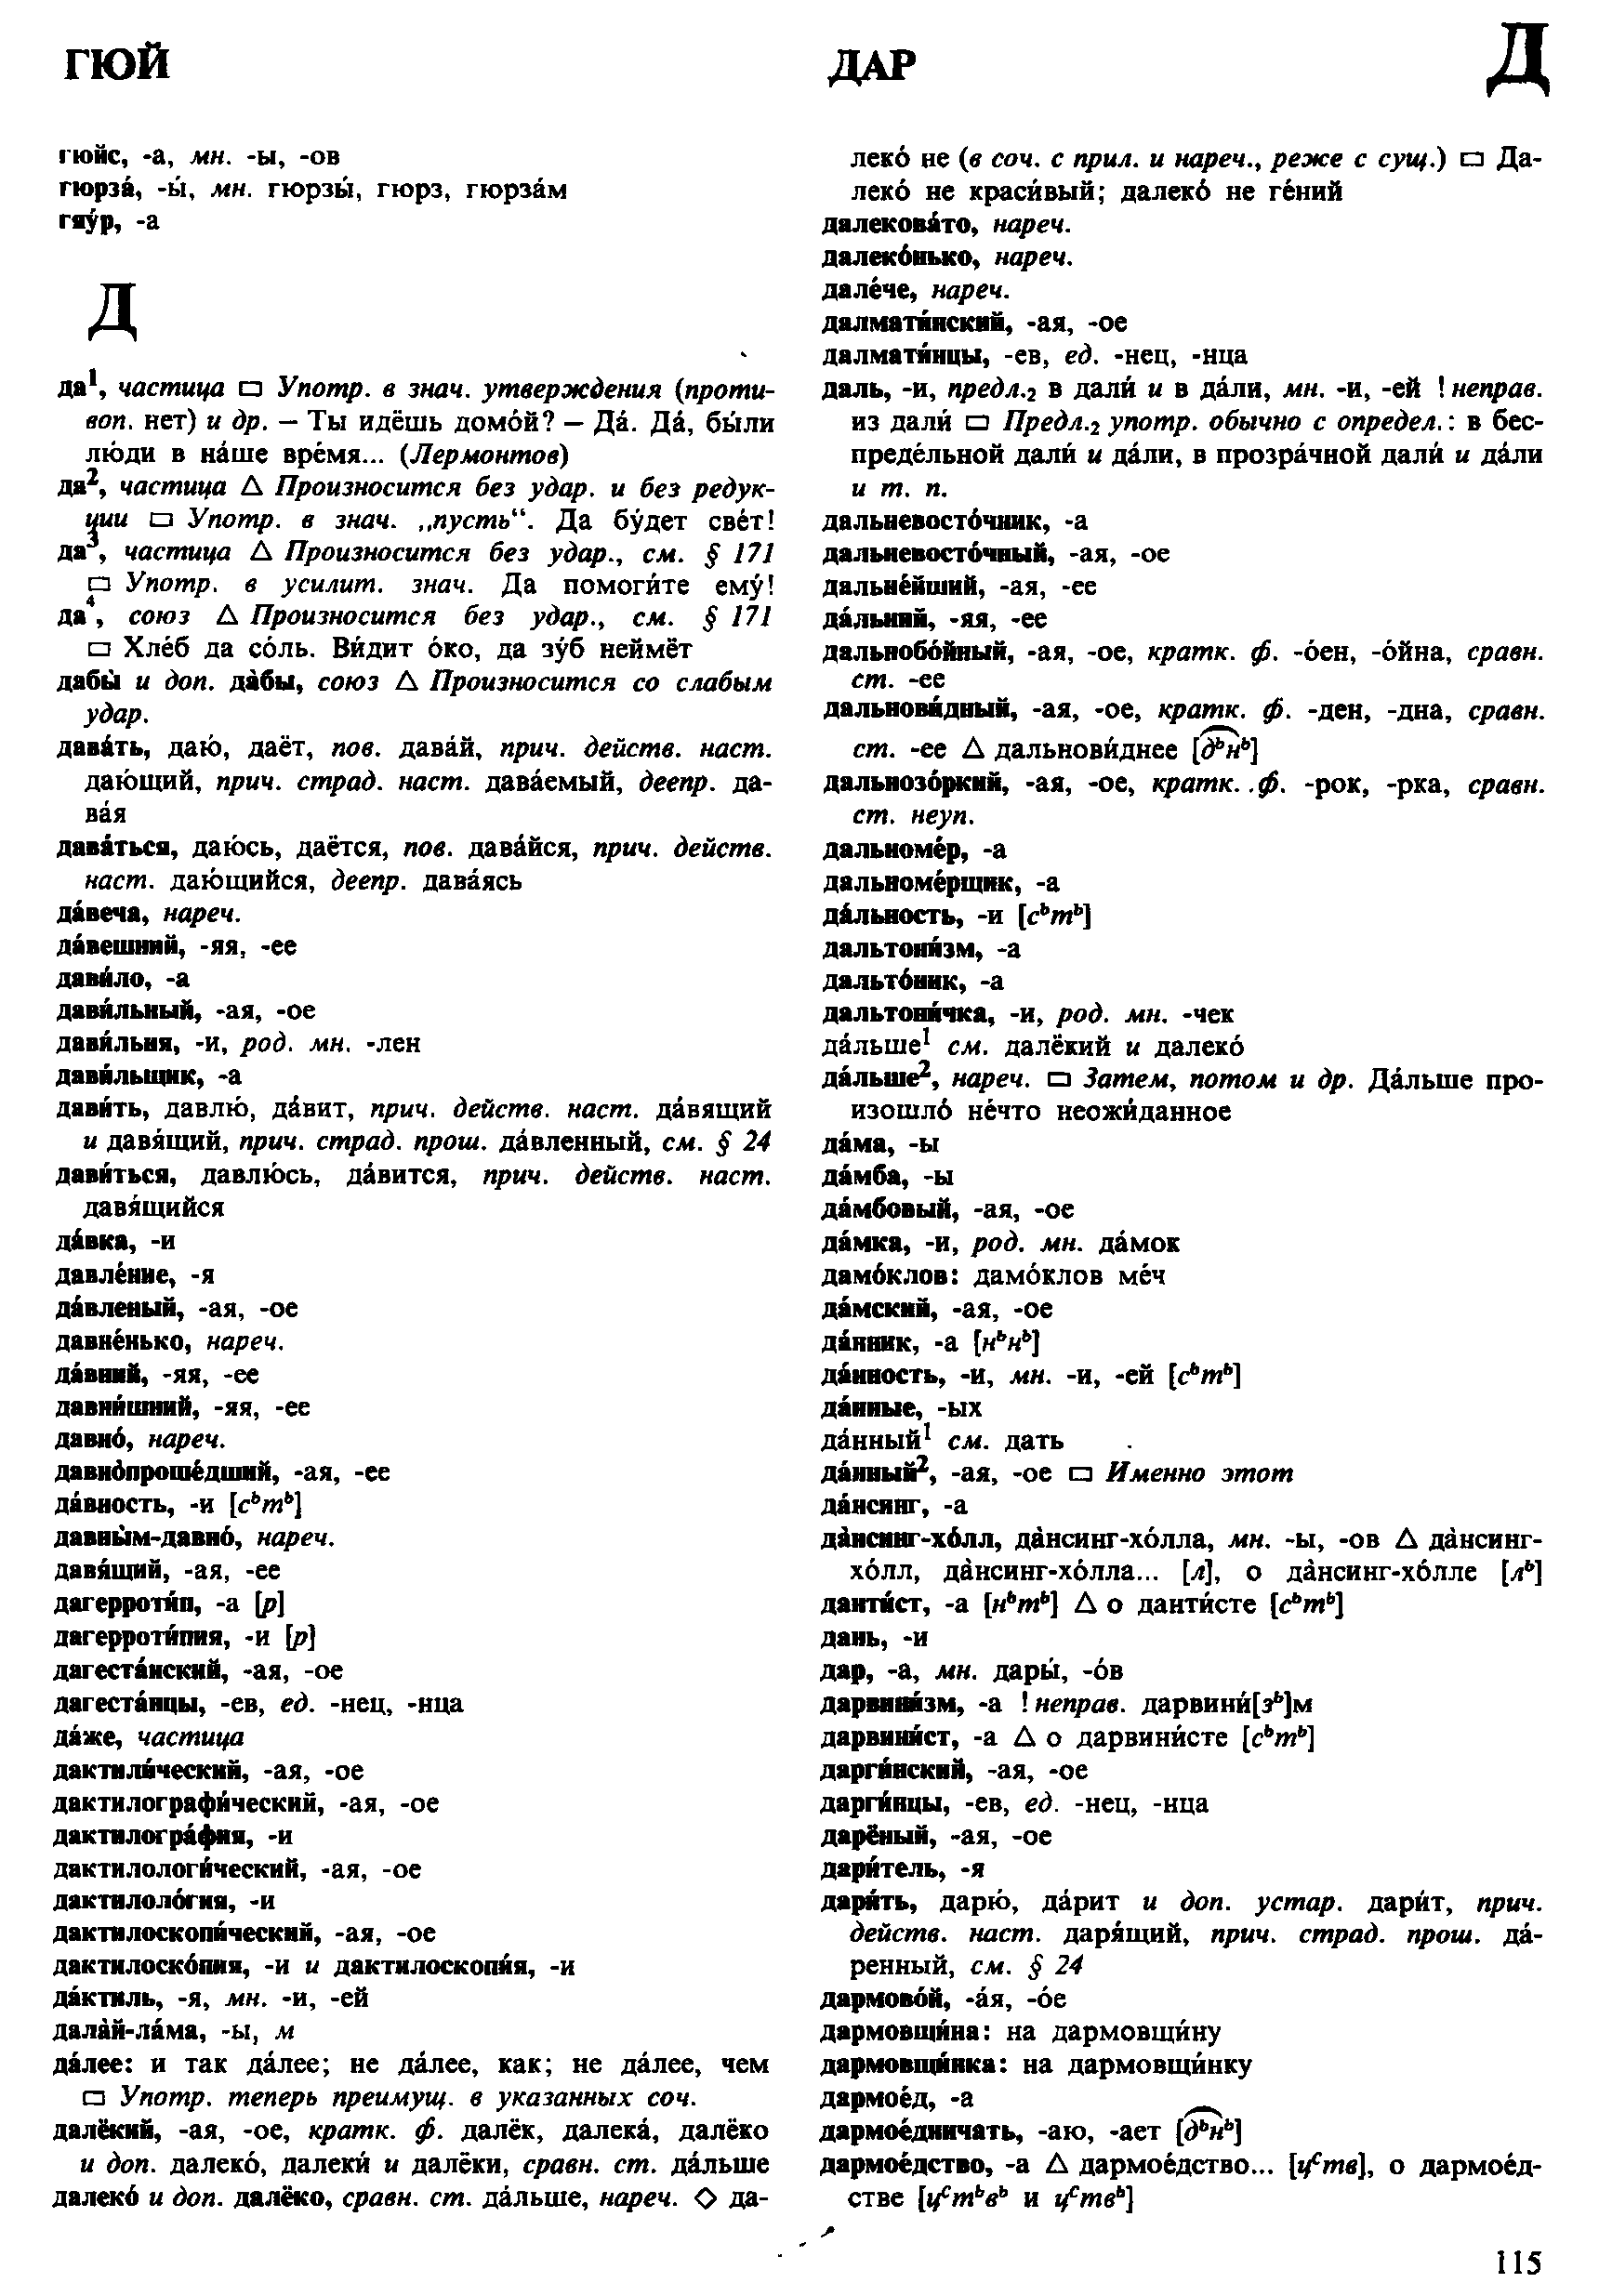 Фотокопия pdf / скан страницы 115 орфоэпического словаря под редакцией Аванесова (4 издание, 1988 год)